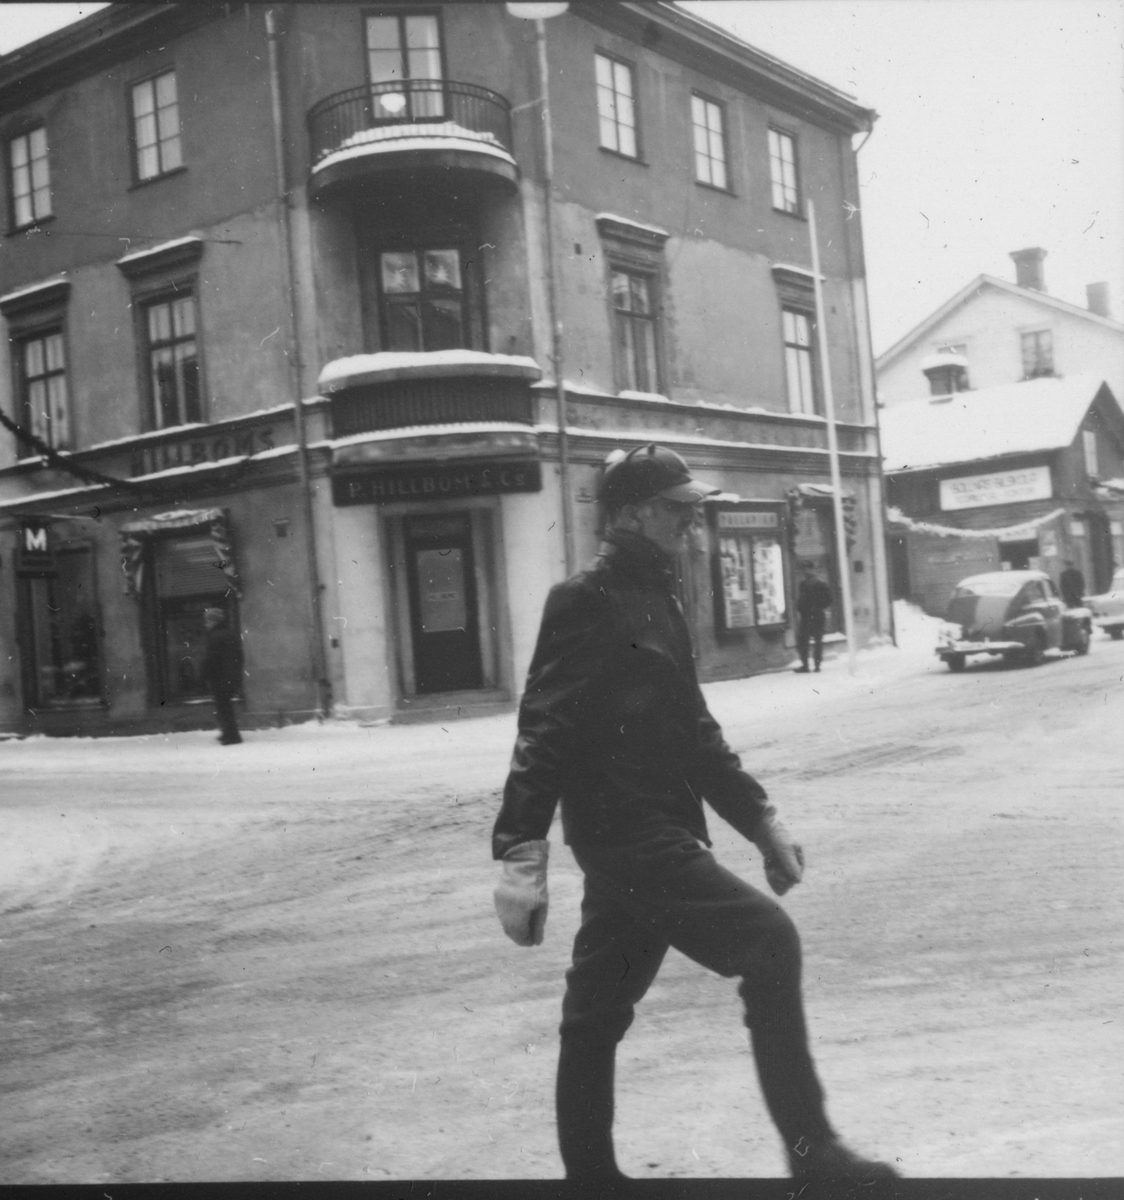 På stan gatubilder från Bollnäs.
7/1-1966